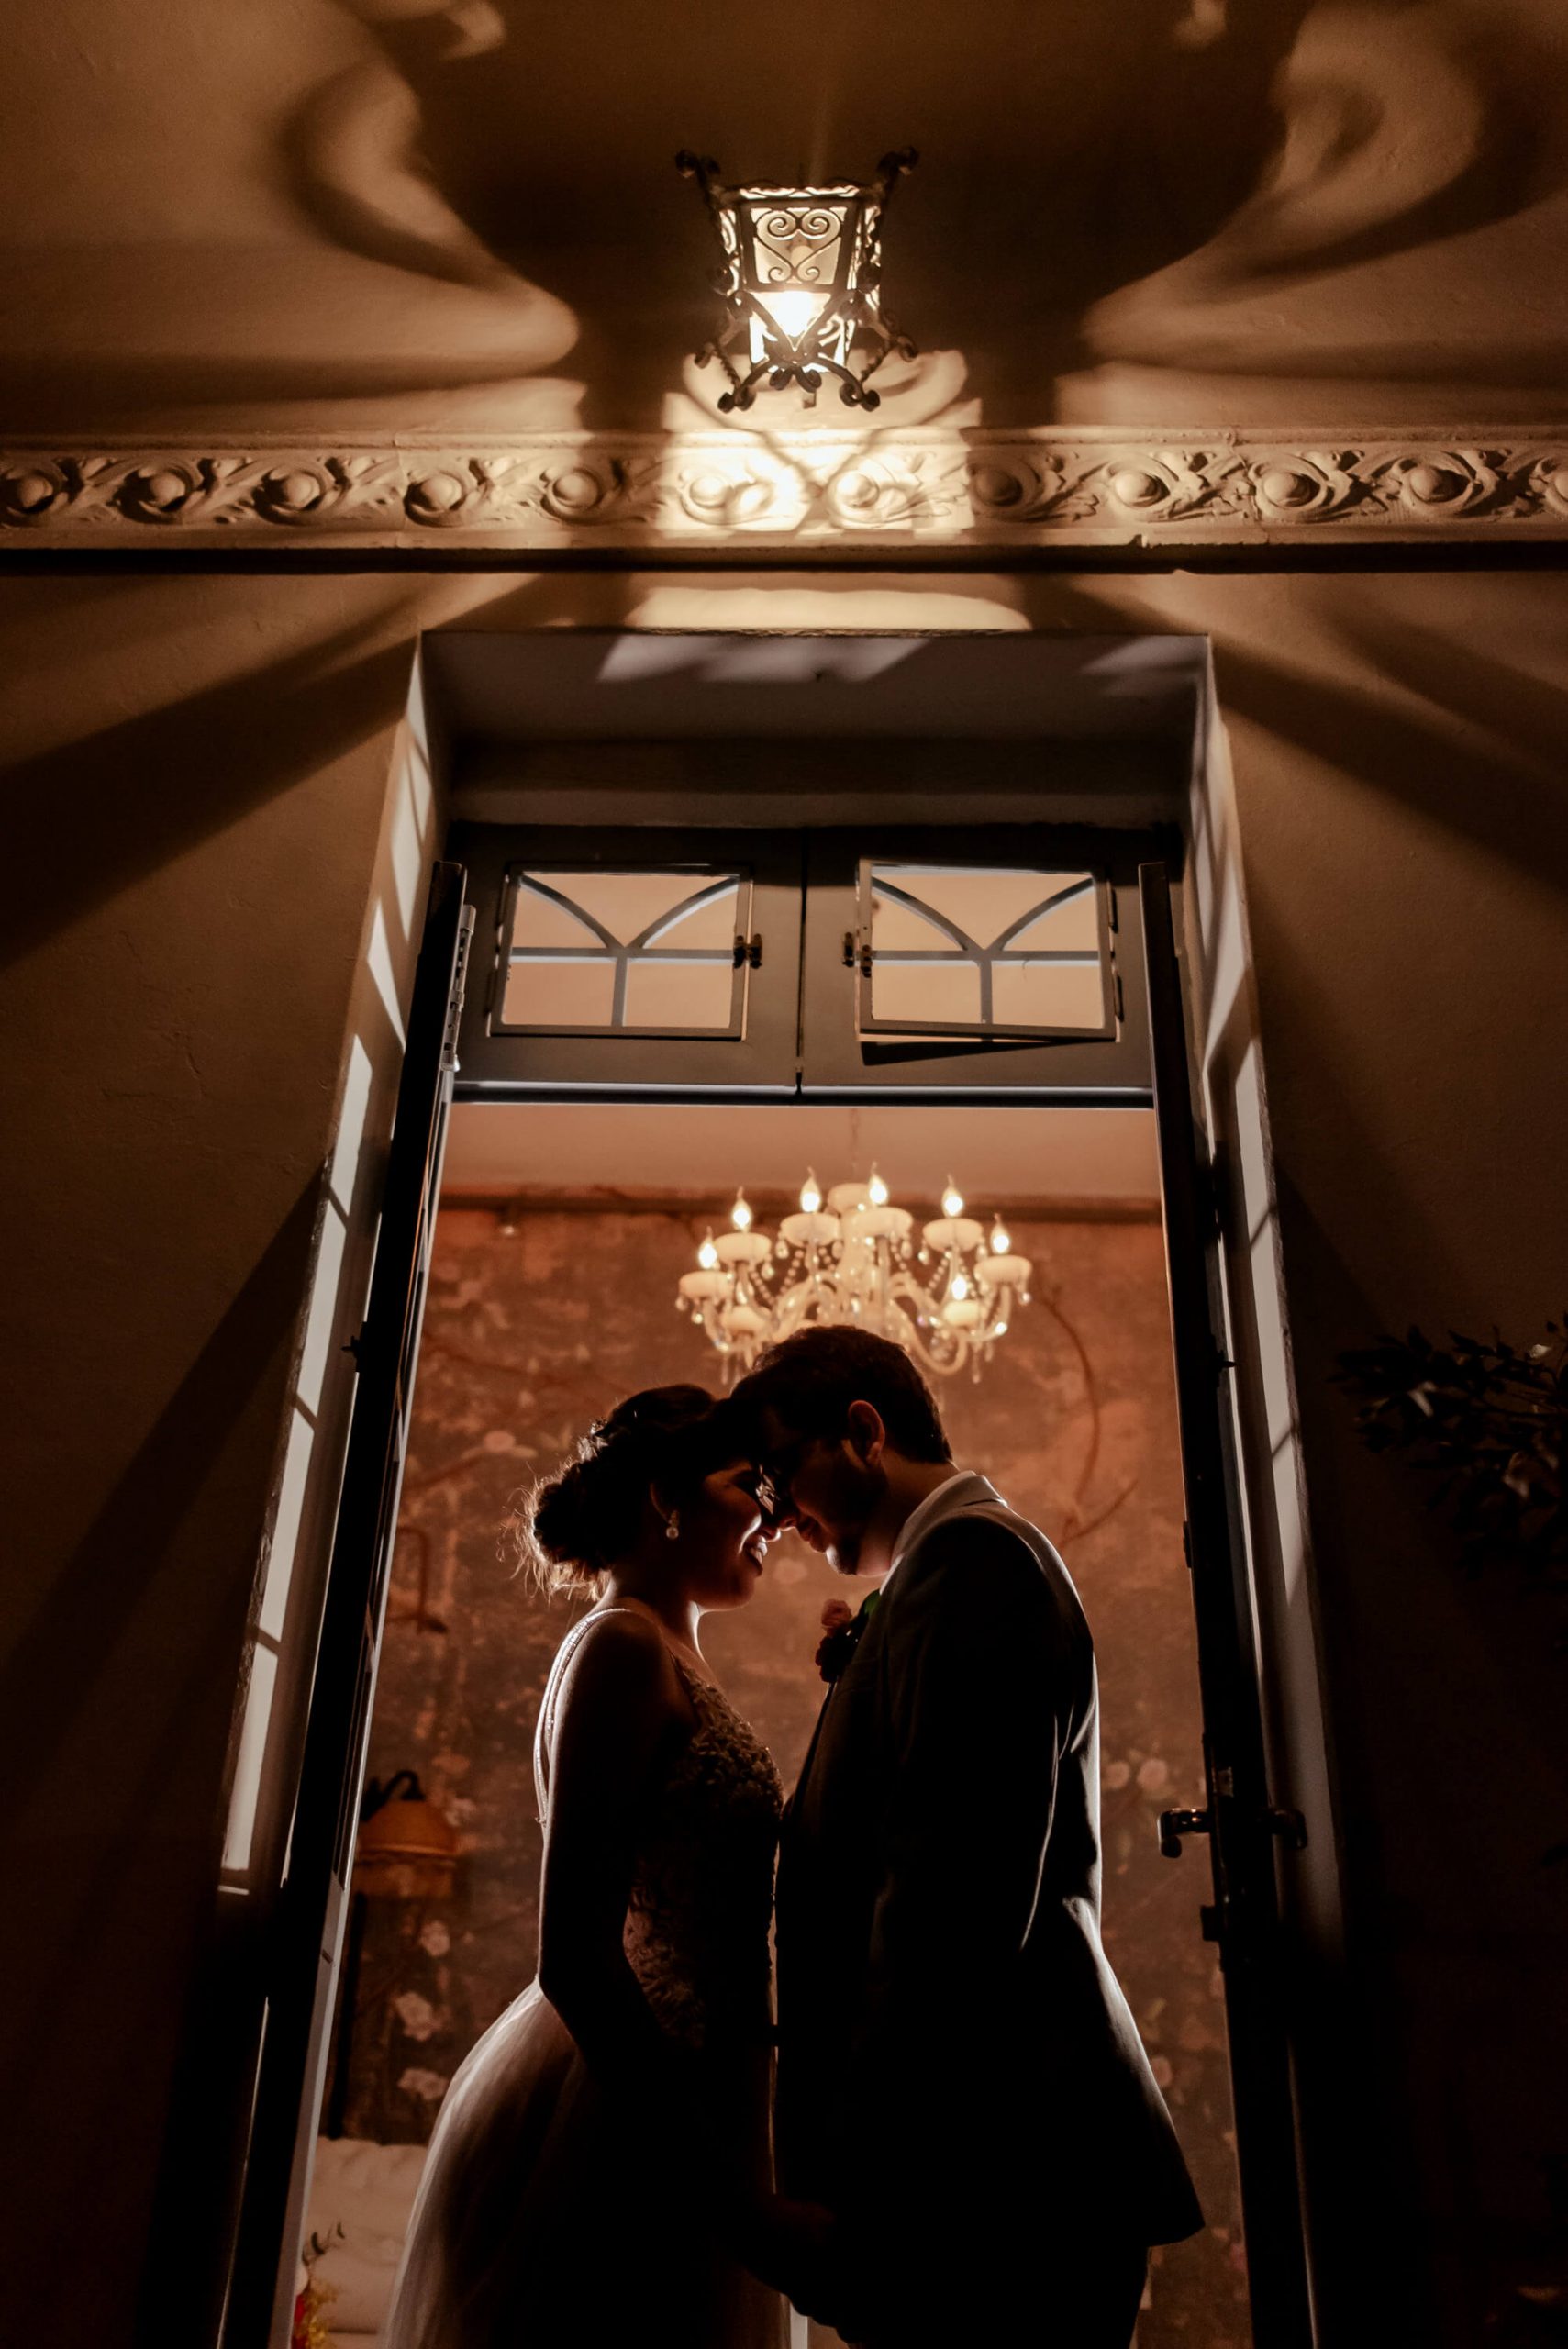 Casamento romântico num final de tarde dos sonhos para dizer SIM na Casa Quintal &#8211; Laura &#038; Gustavo